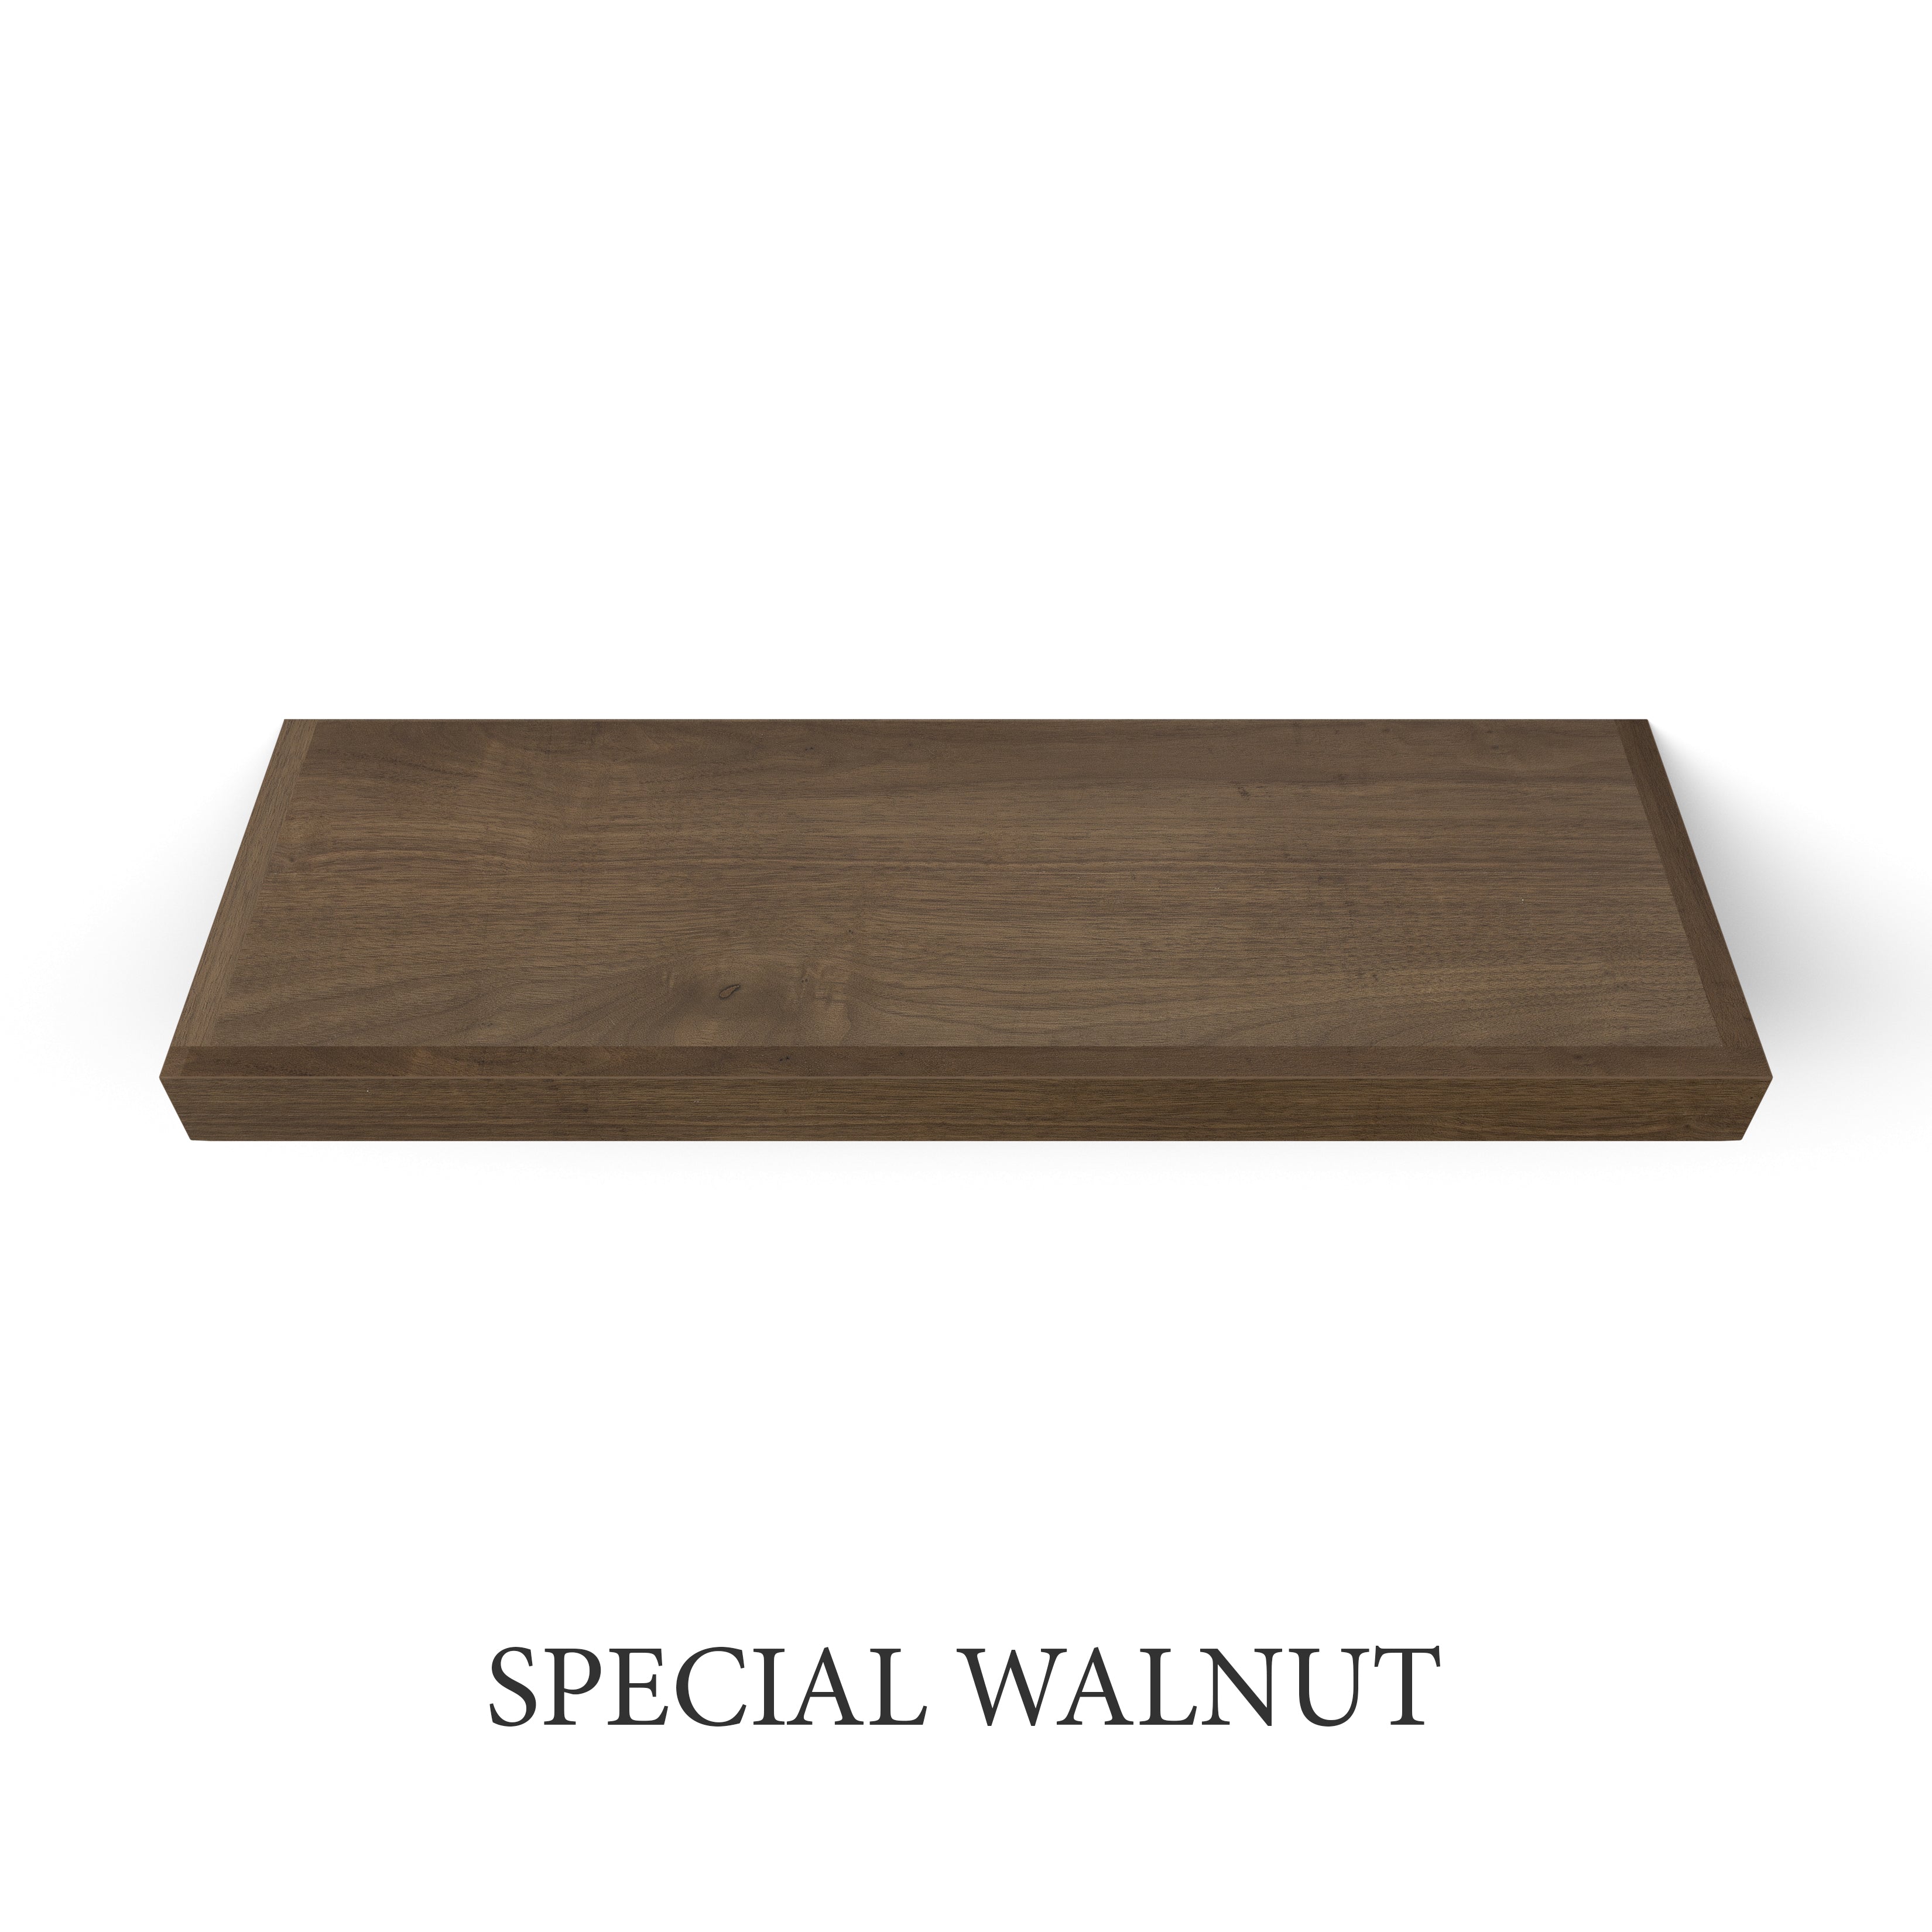 special walnut Walnut 2 Inch Thick Floating Shelf